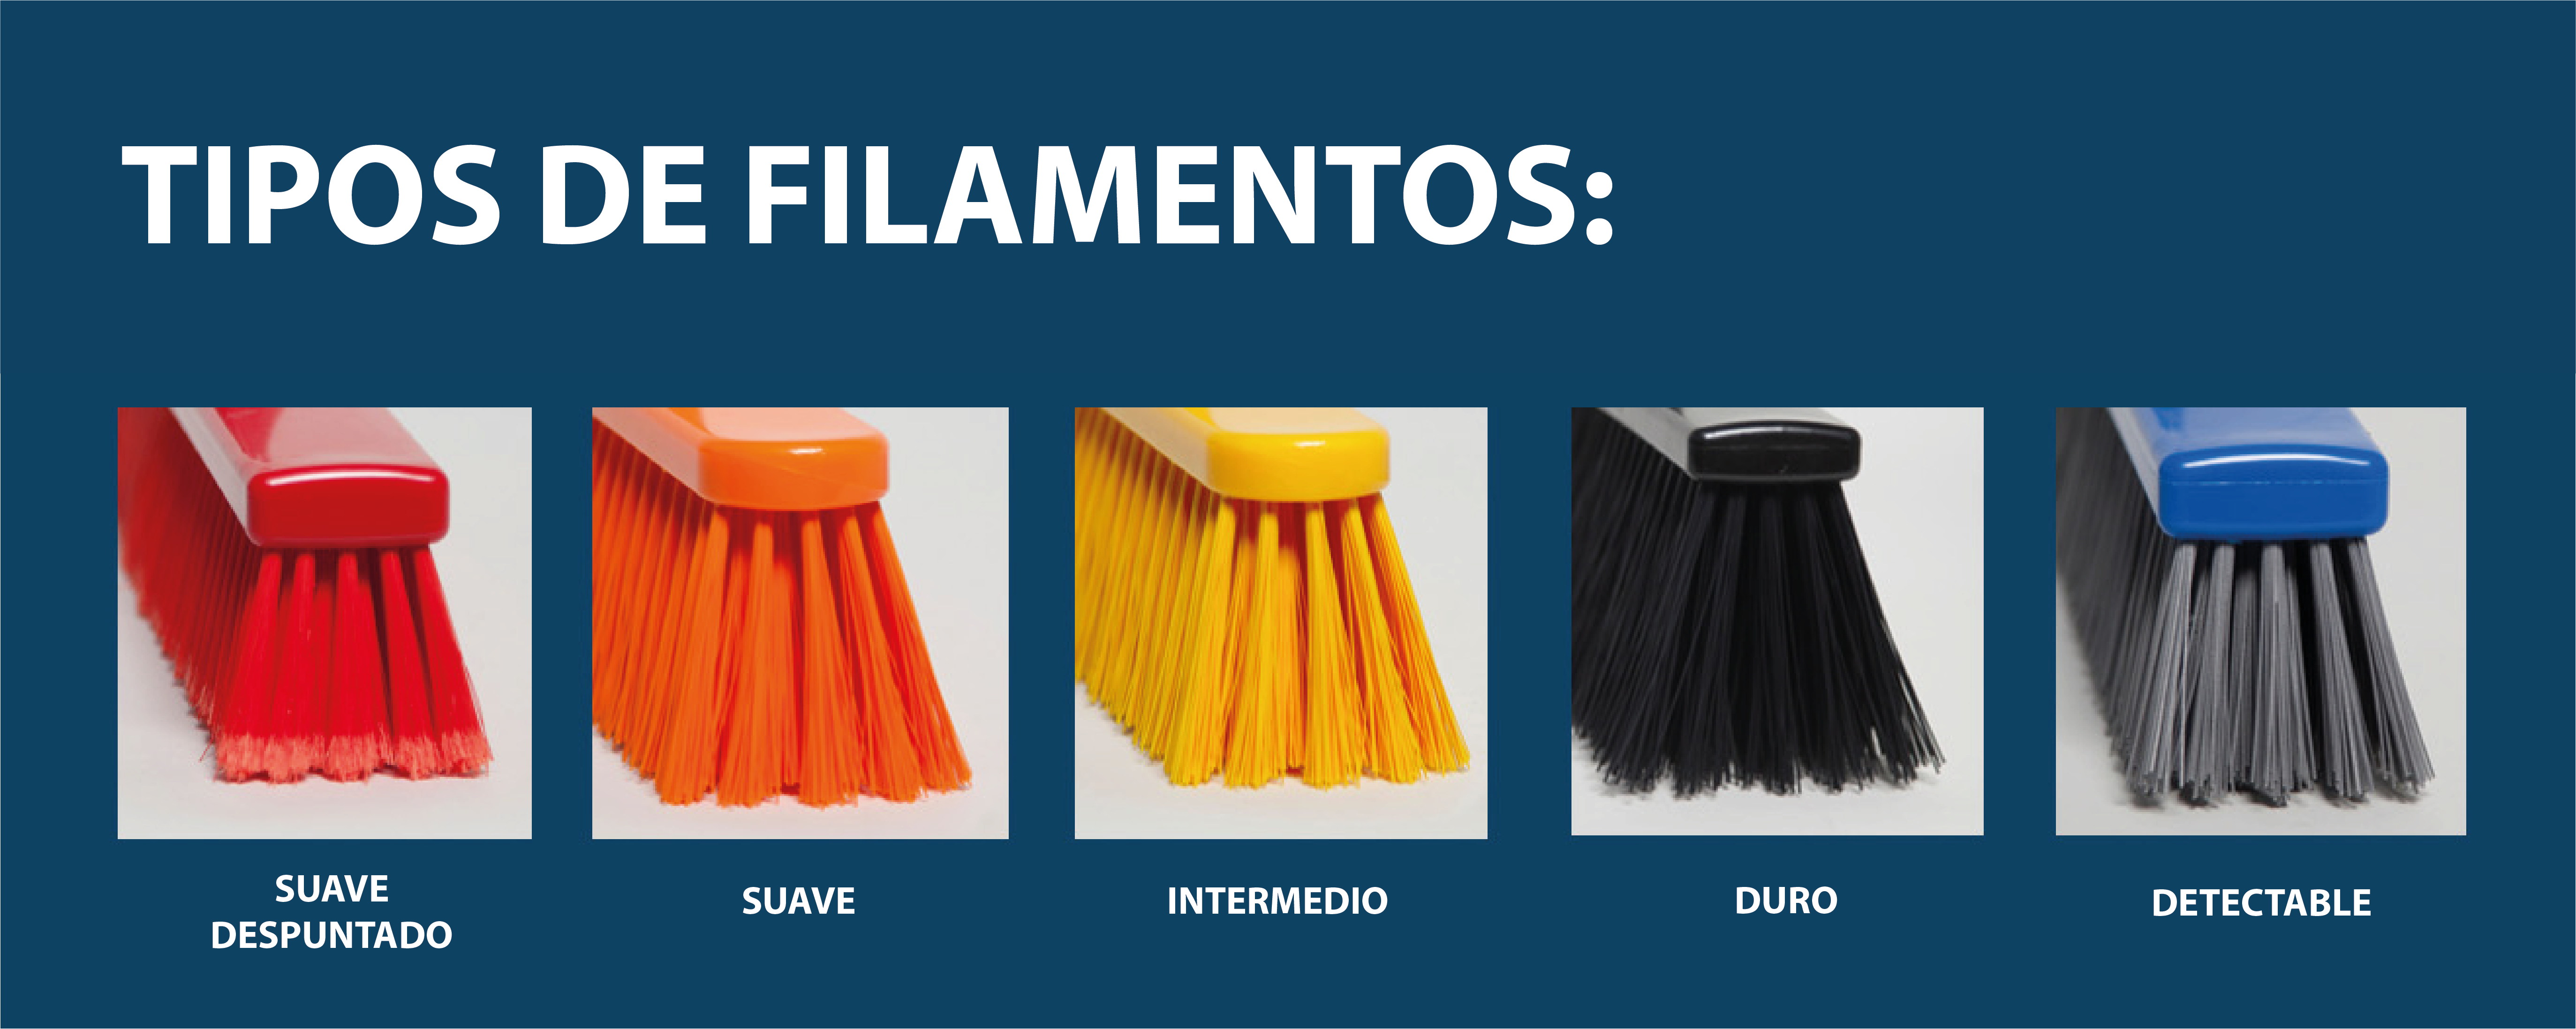 Los distintos tipos de filamentos disponibles en nuestros cepillos higiénicos. 